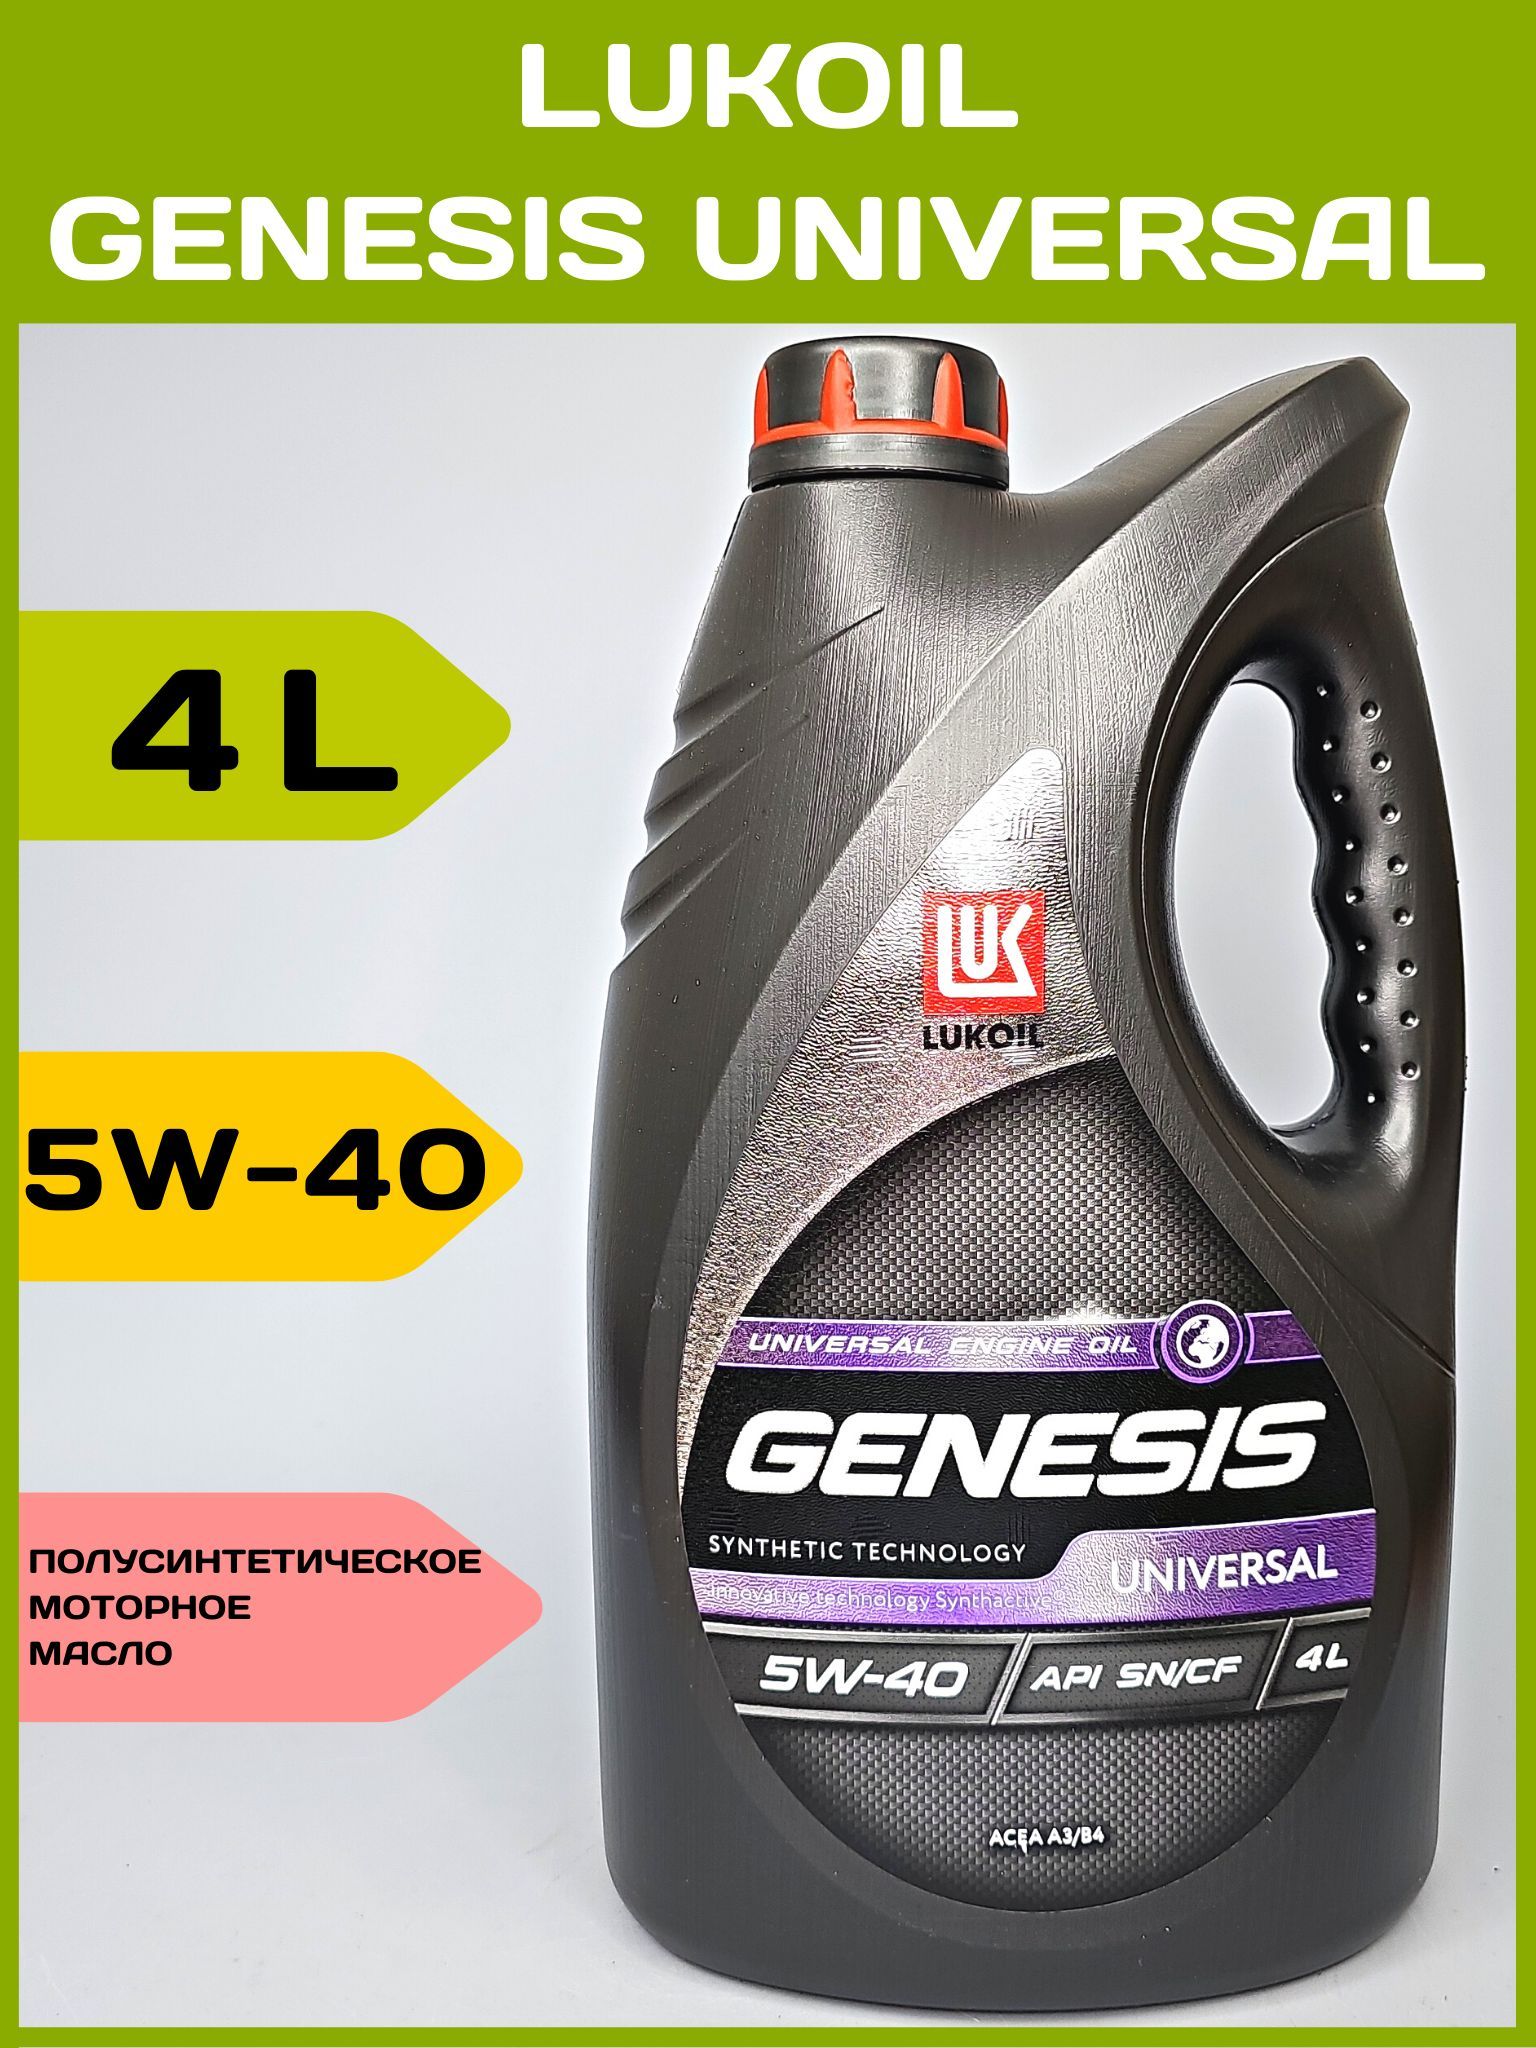 Лукойл генезис универсал отзывы. Лукойл Genesis Universal 5w40. Lukoil Genesis Universal 5w-40 4л. 3148631 Лукойл. Генезис универсал 5-40.